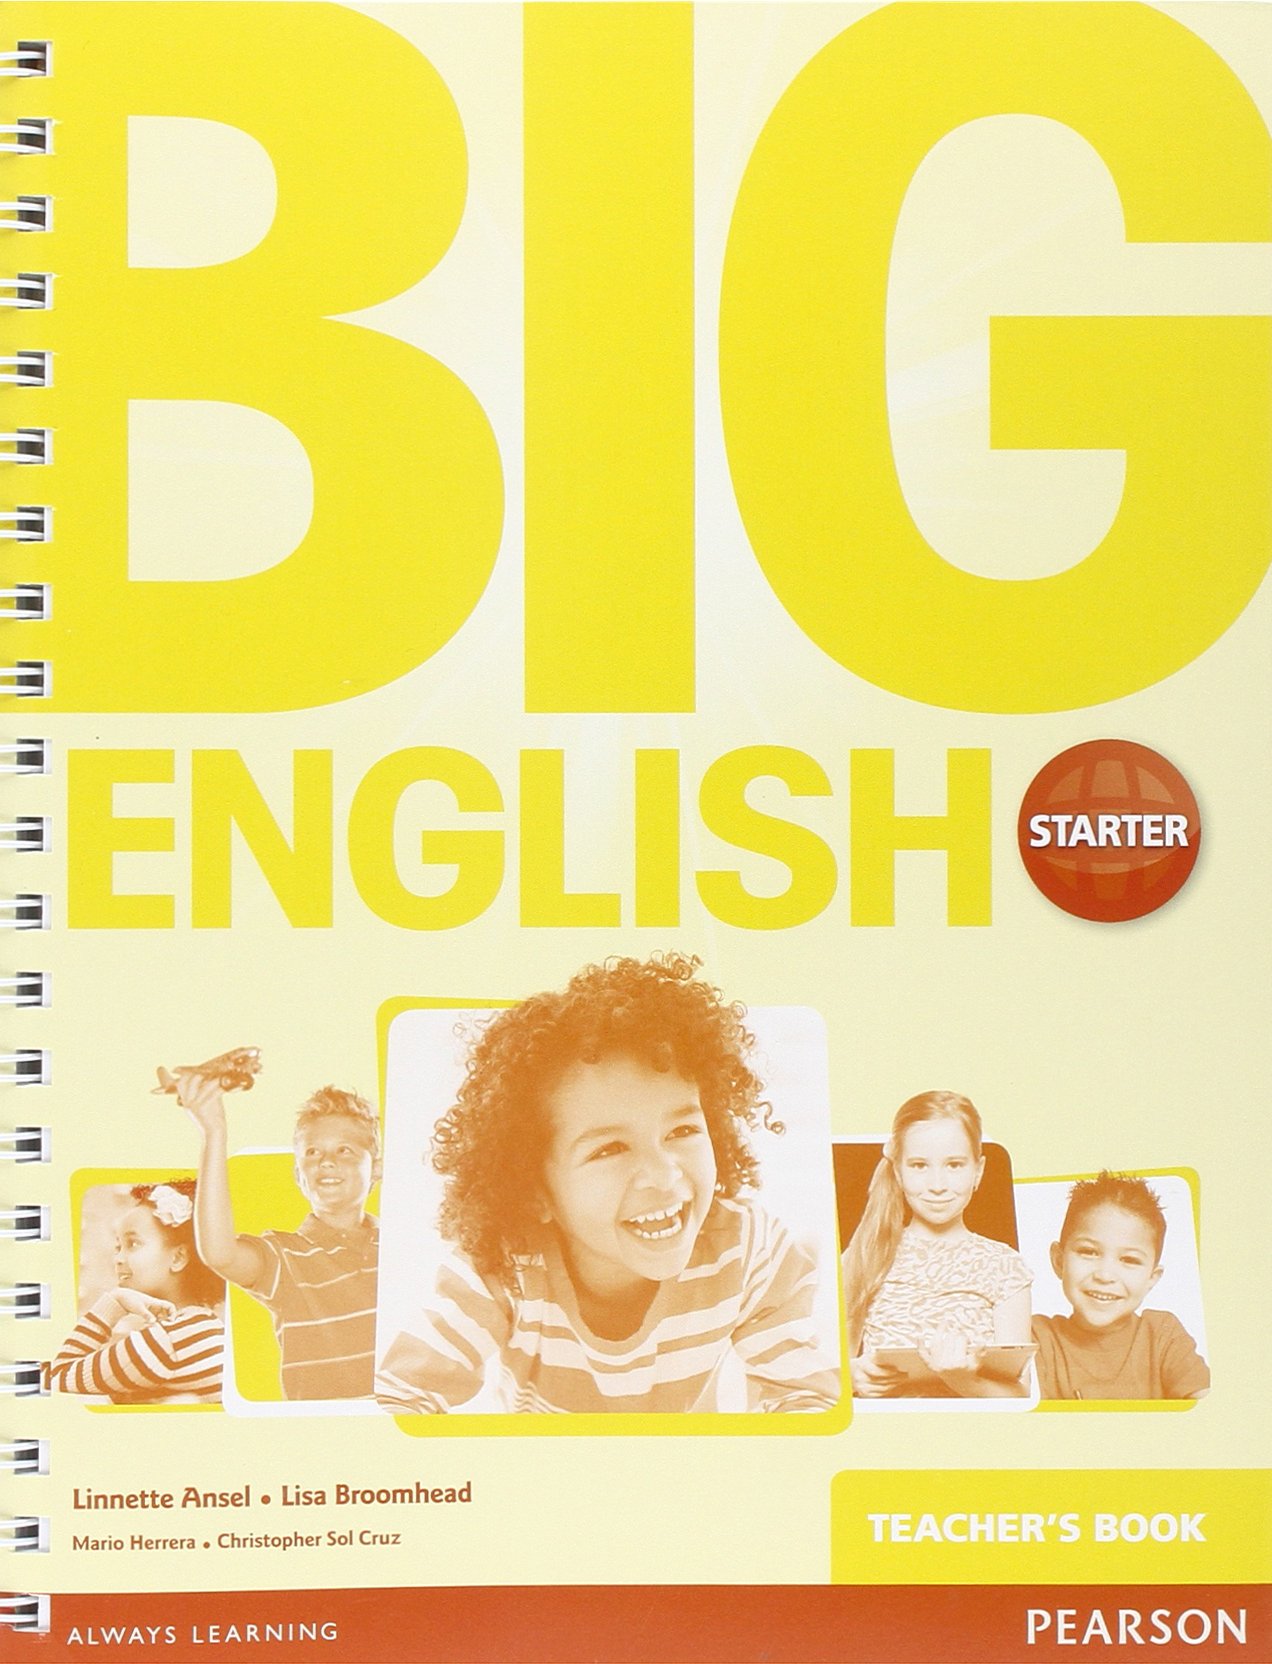 BIG ENGLISH STARTER Teacher's Book